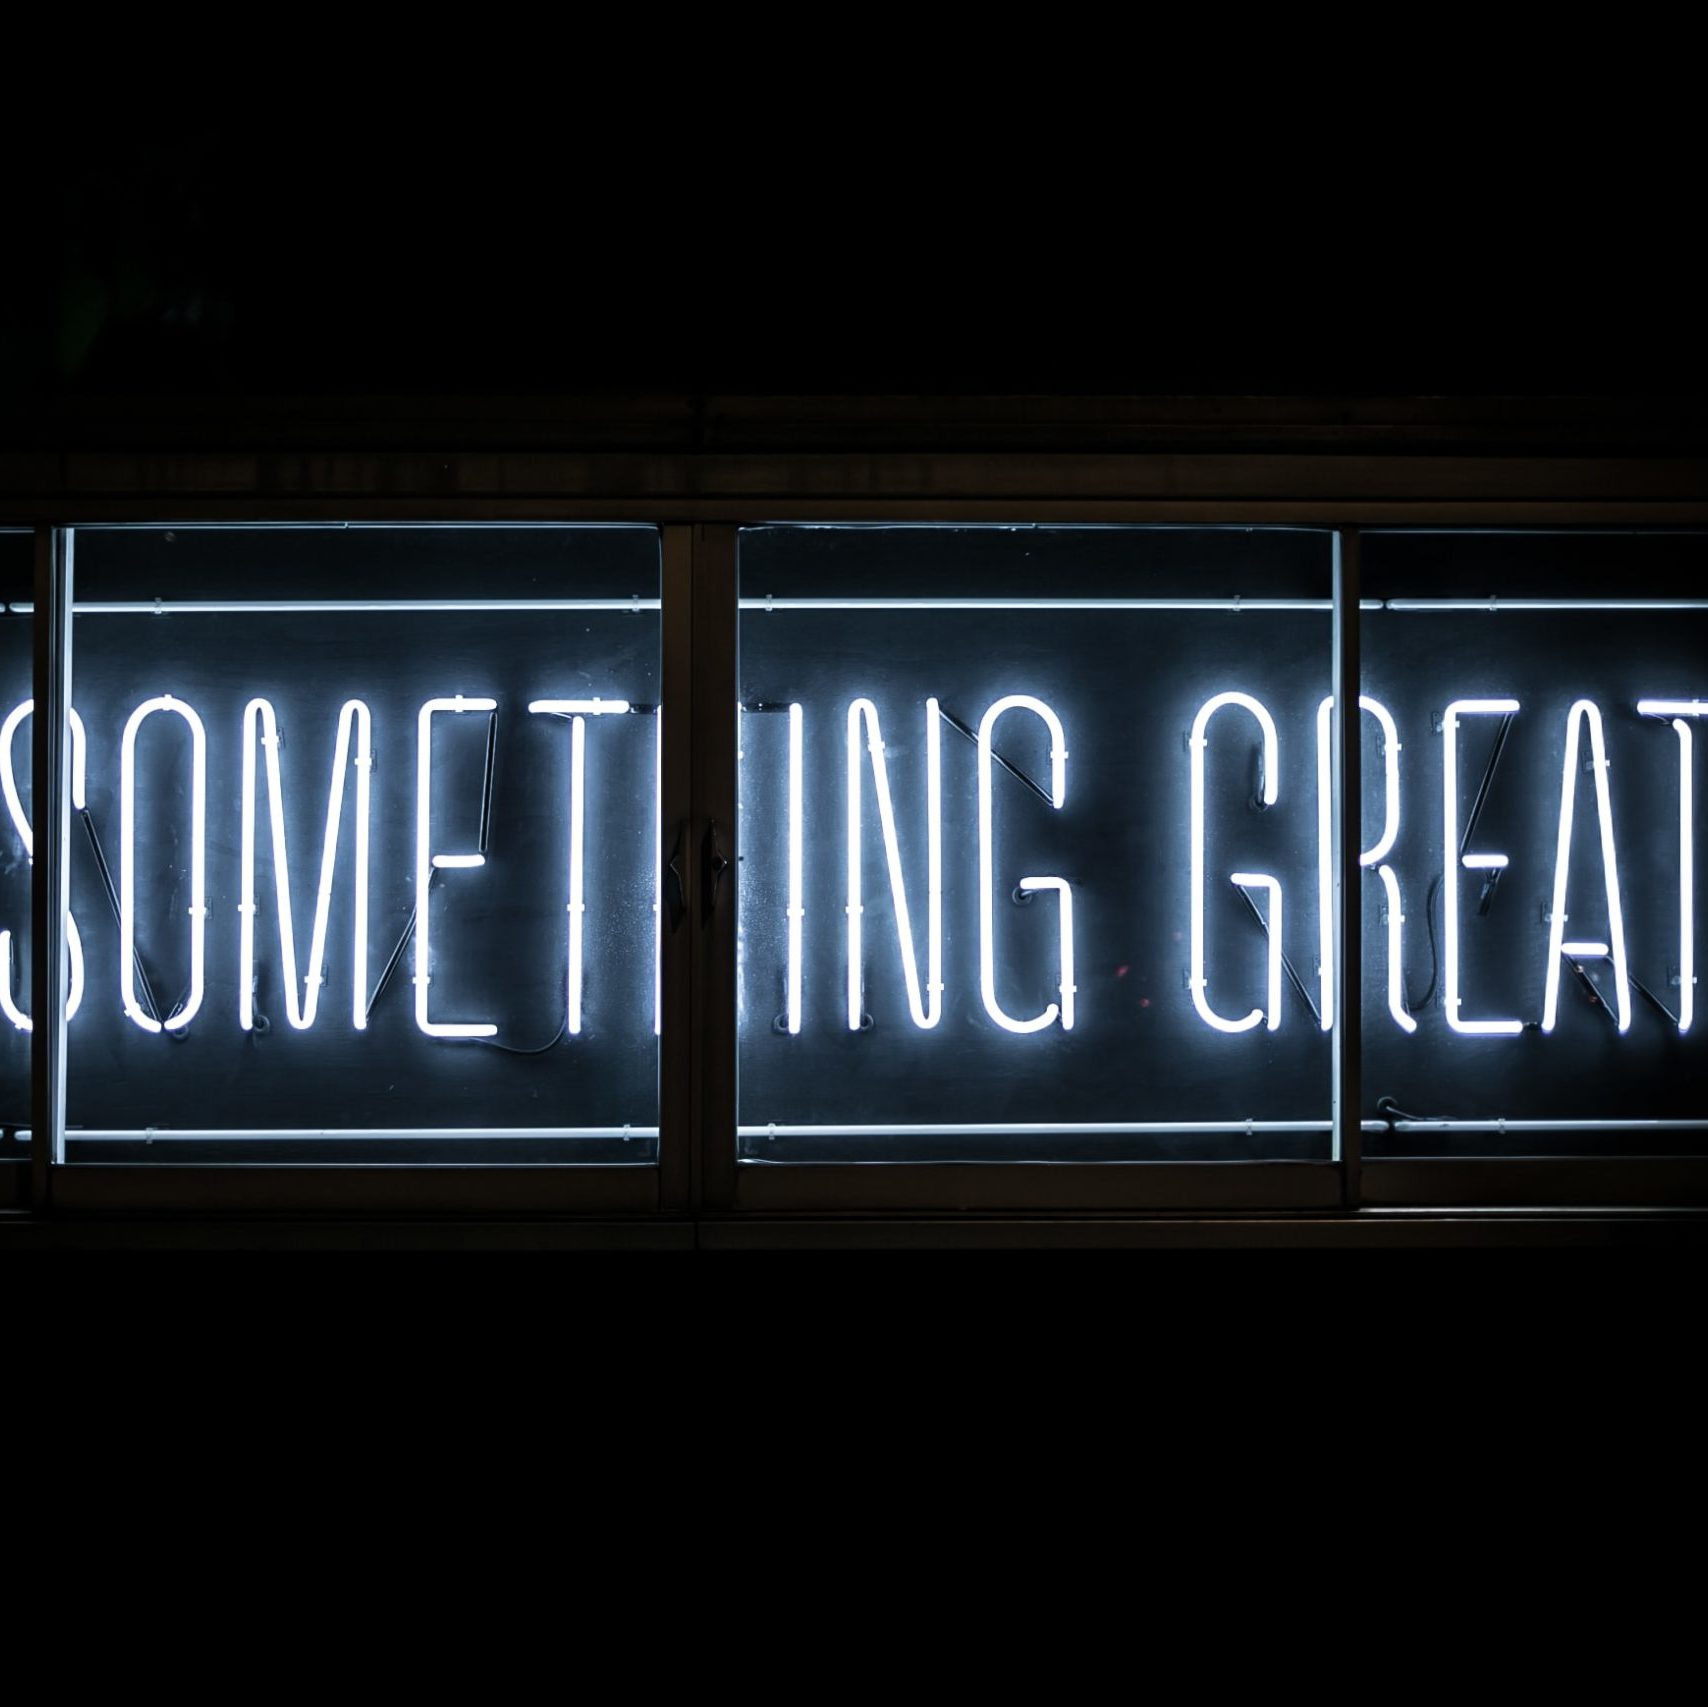 Image "Do something great"